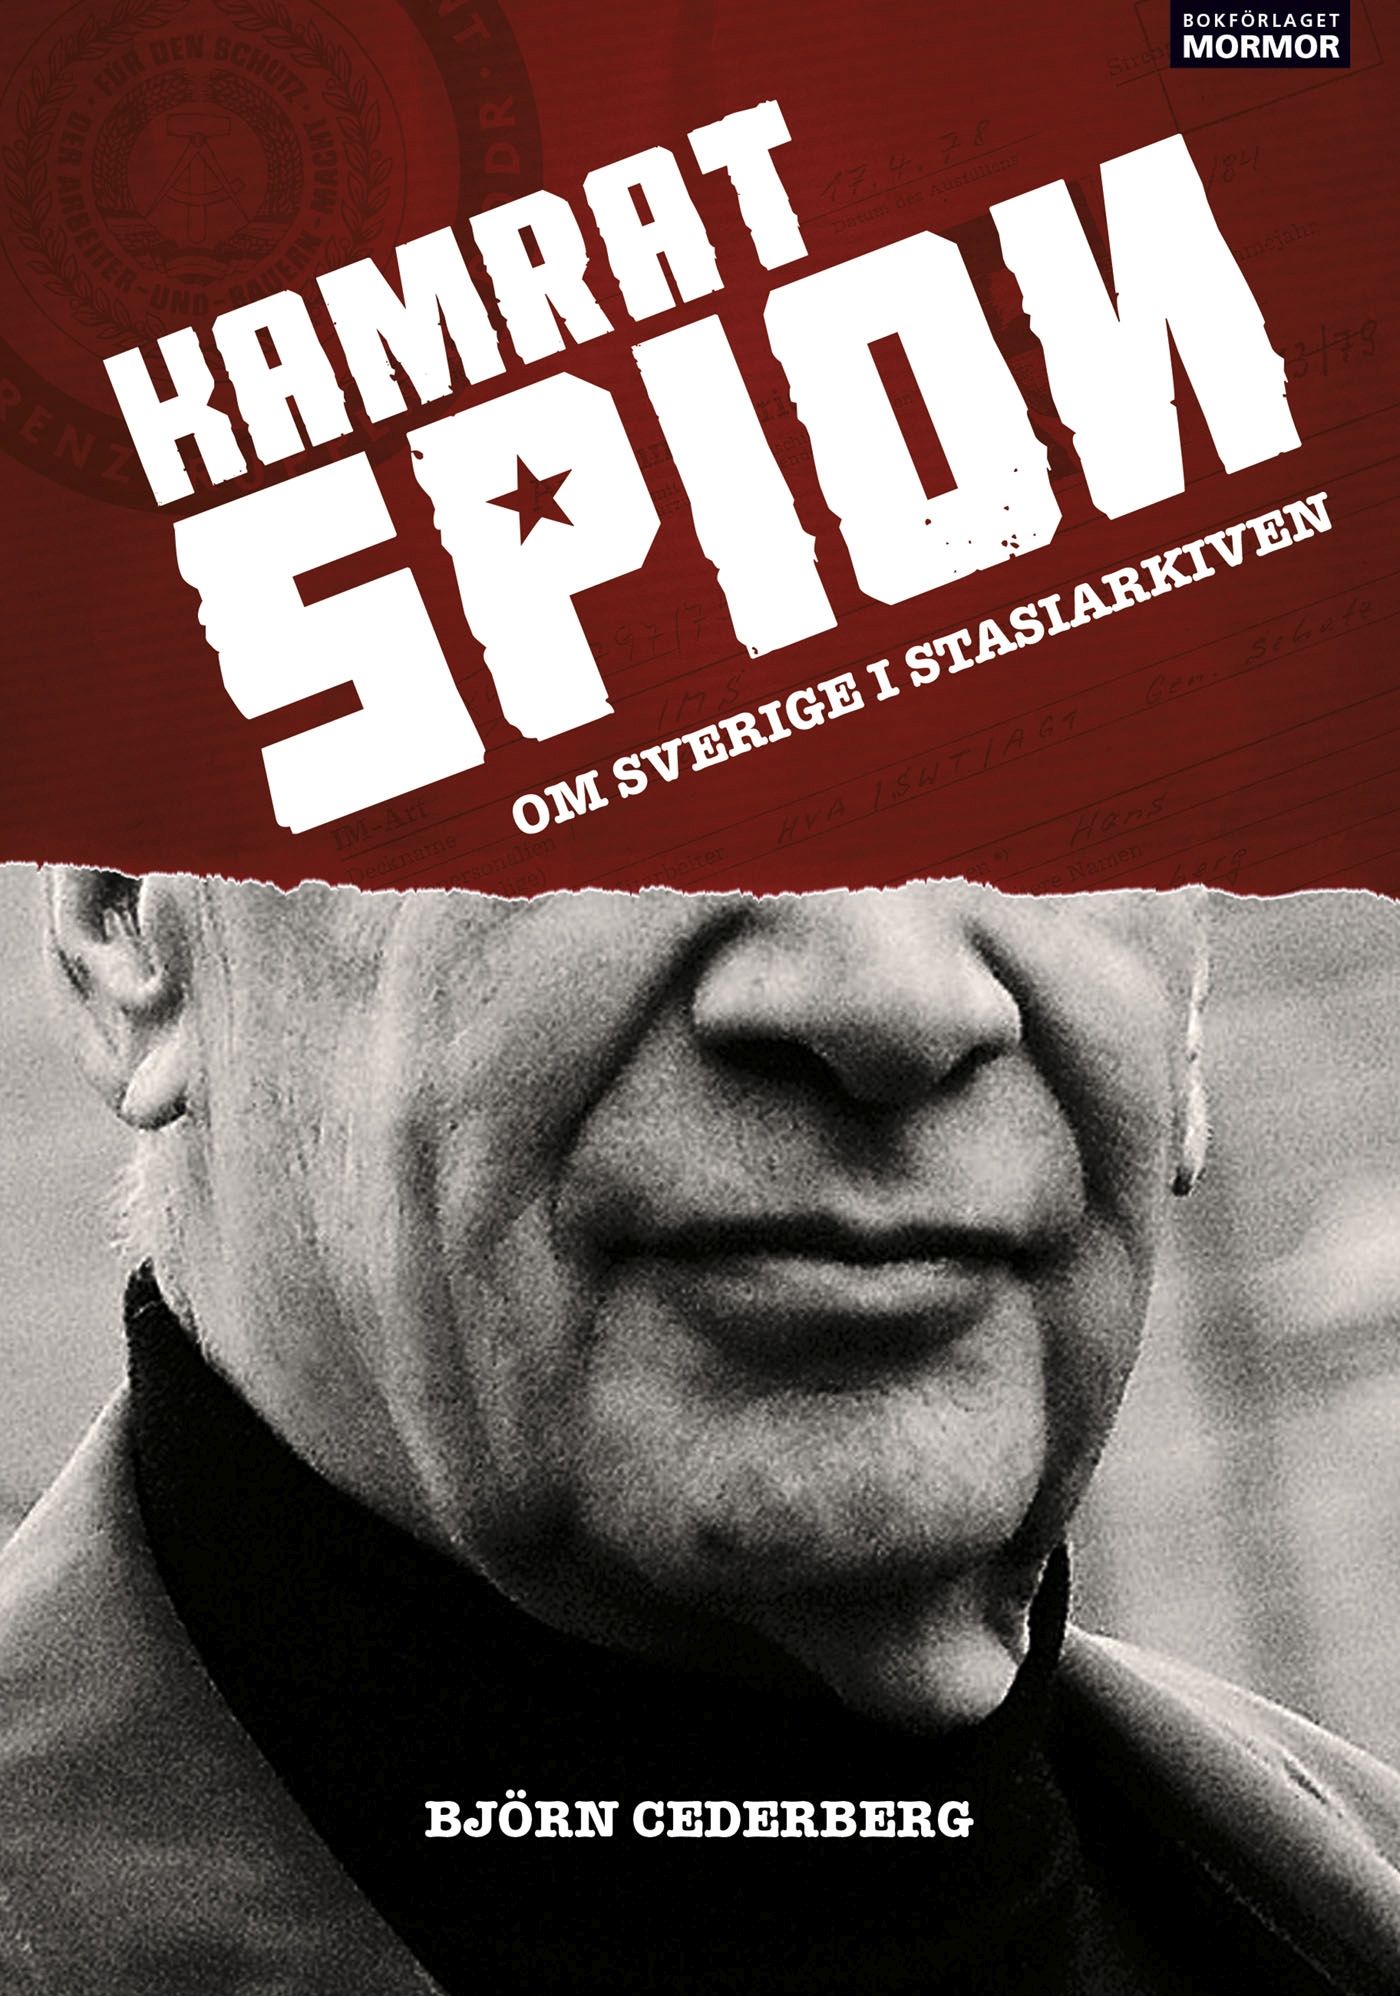 Kamrat, spion - Om Sverige i Stasiarkiven, e-bok av Björn Cederberg